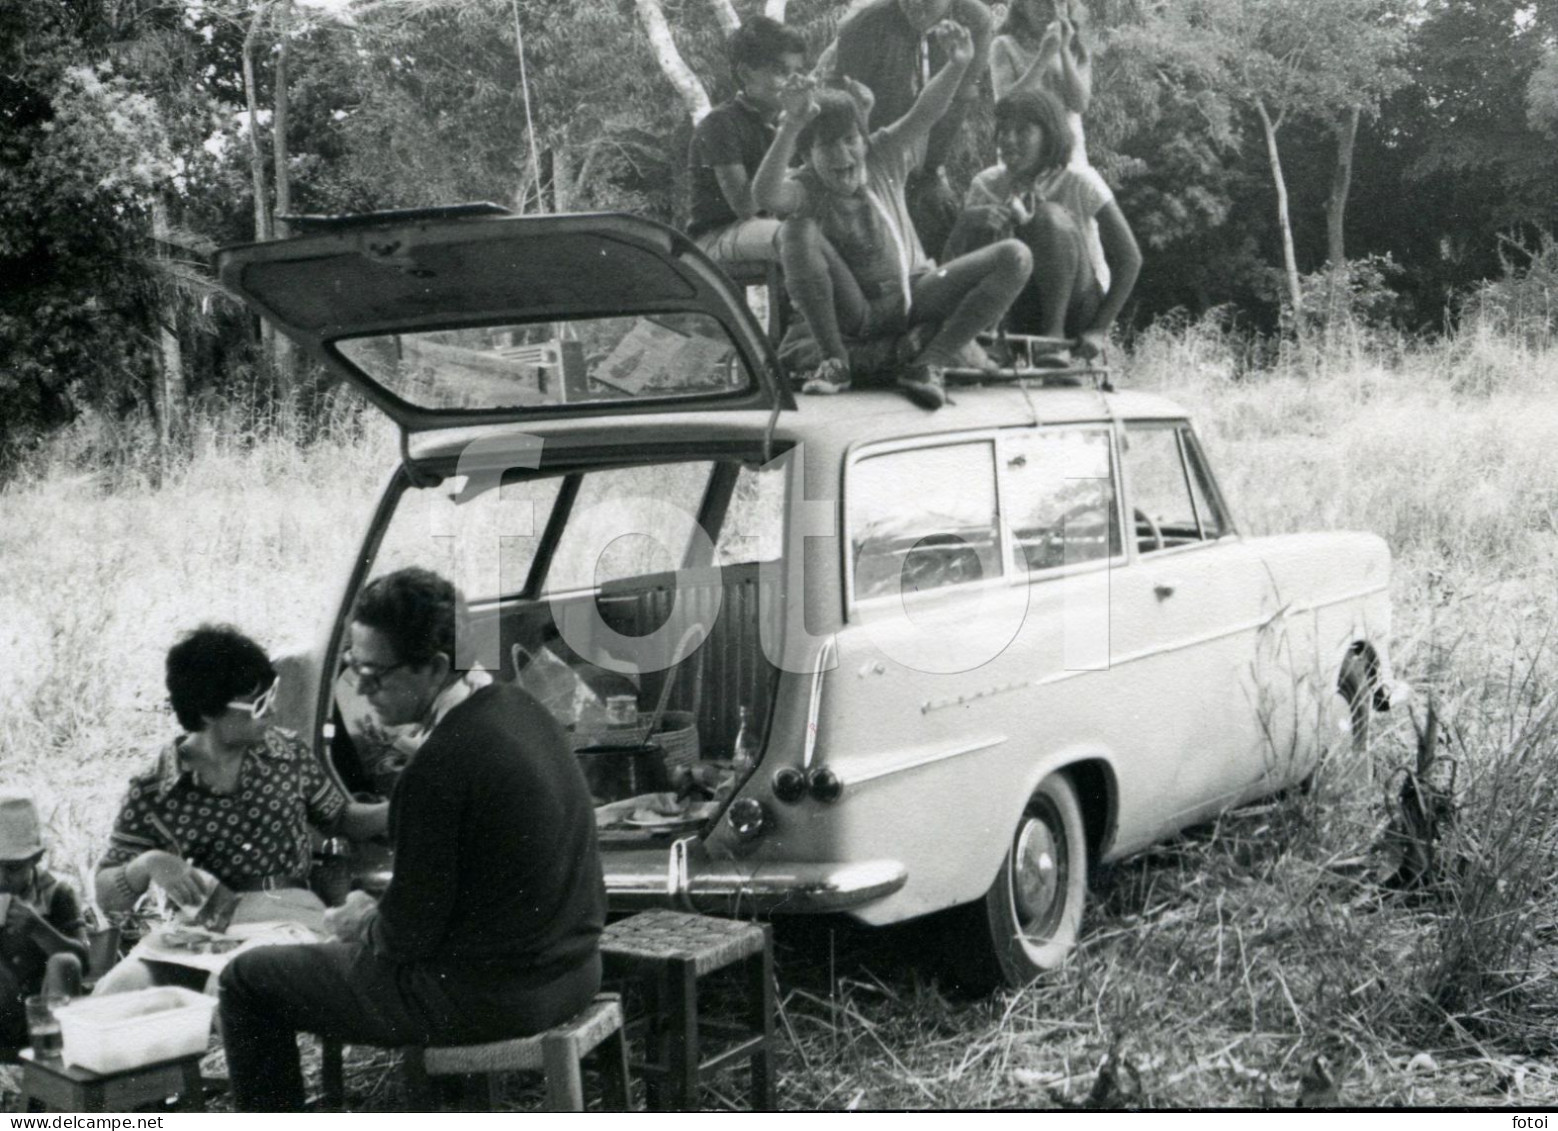 60s ORIGINAL AMATEUR PHOTO FOTO P2 OPEL REKORD CARAVAN OLDTIMER PICNIC MOZAMBIQUE MOÇAMBIQUE AFRICA  AFRIQUE AT112 - Cars